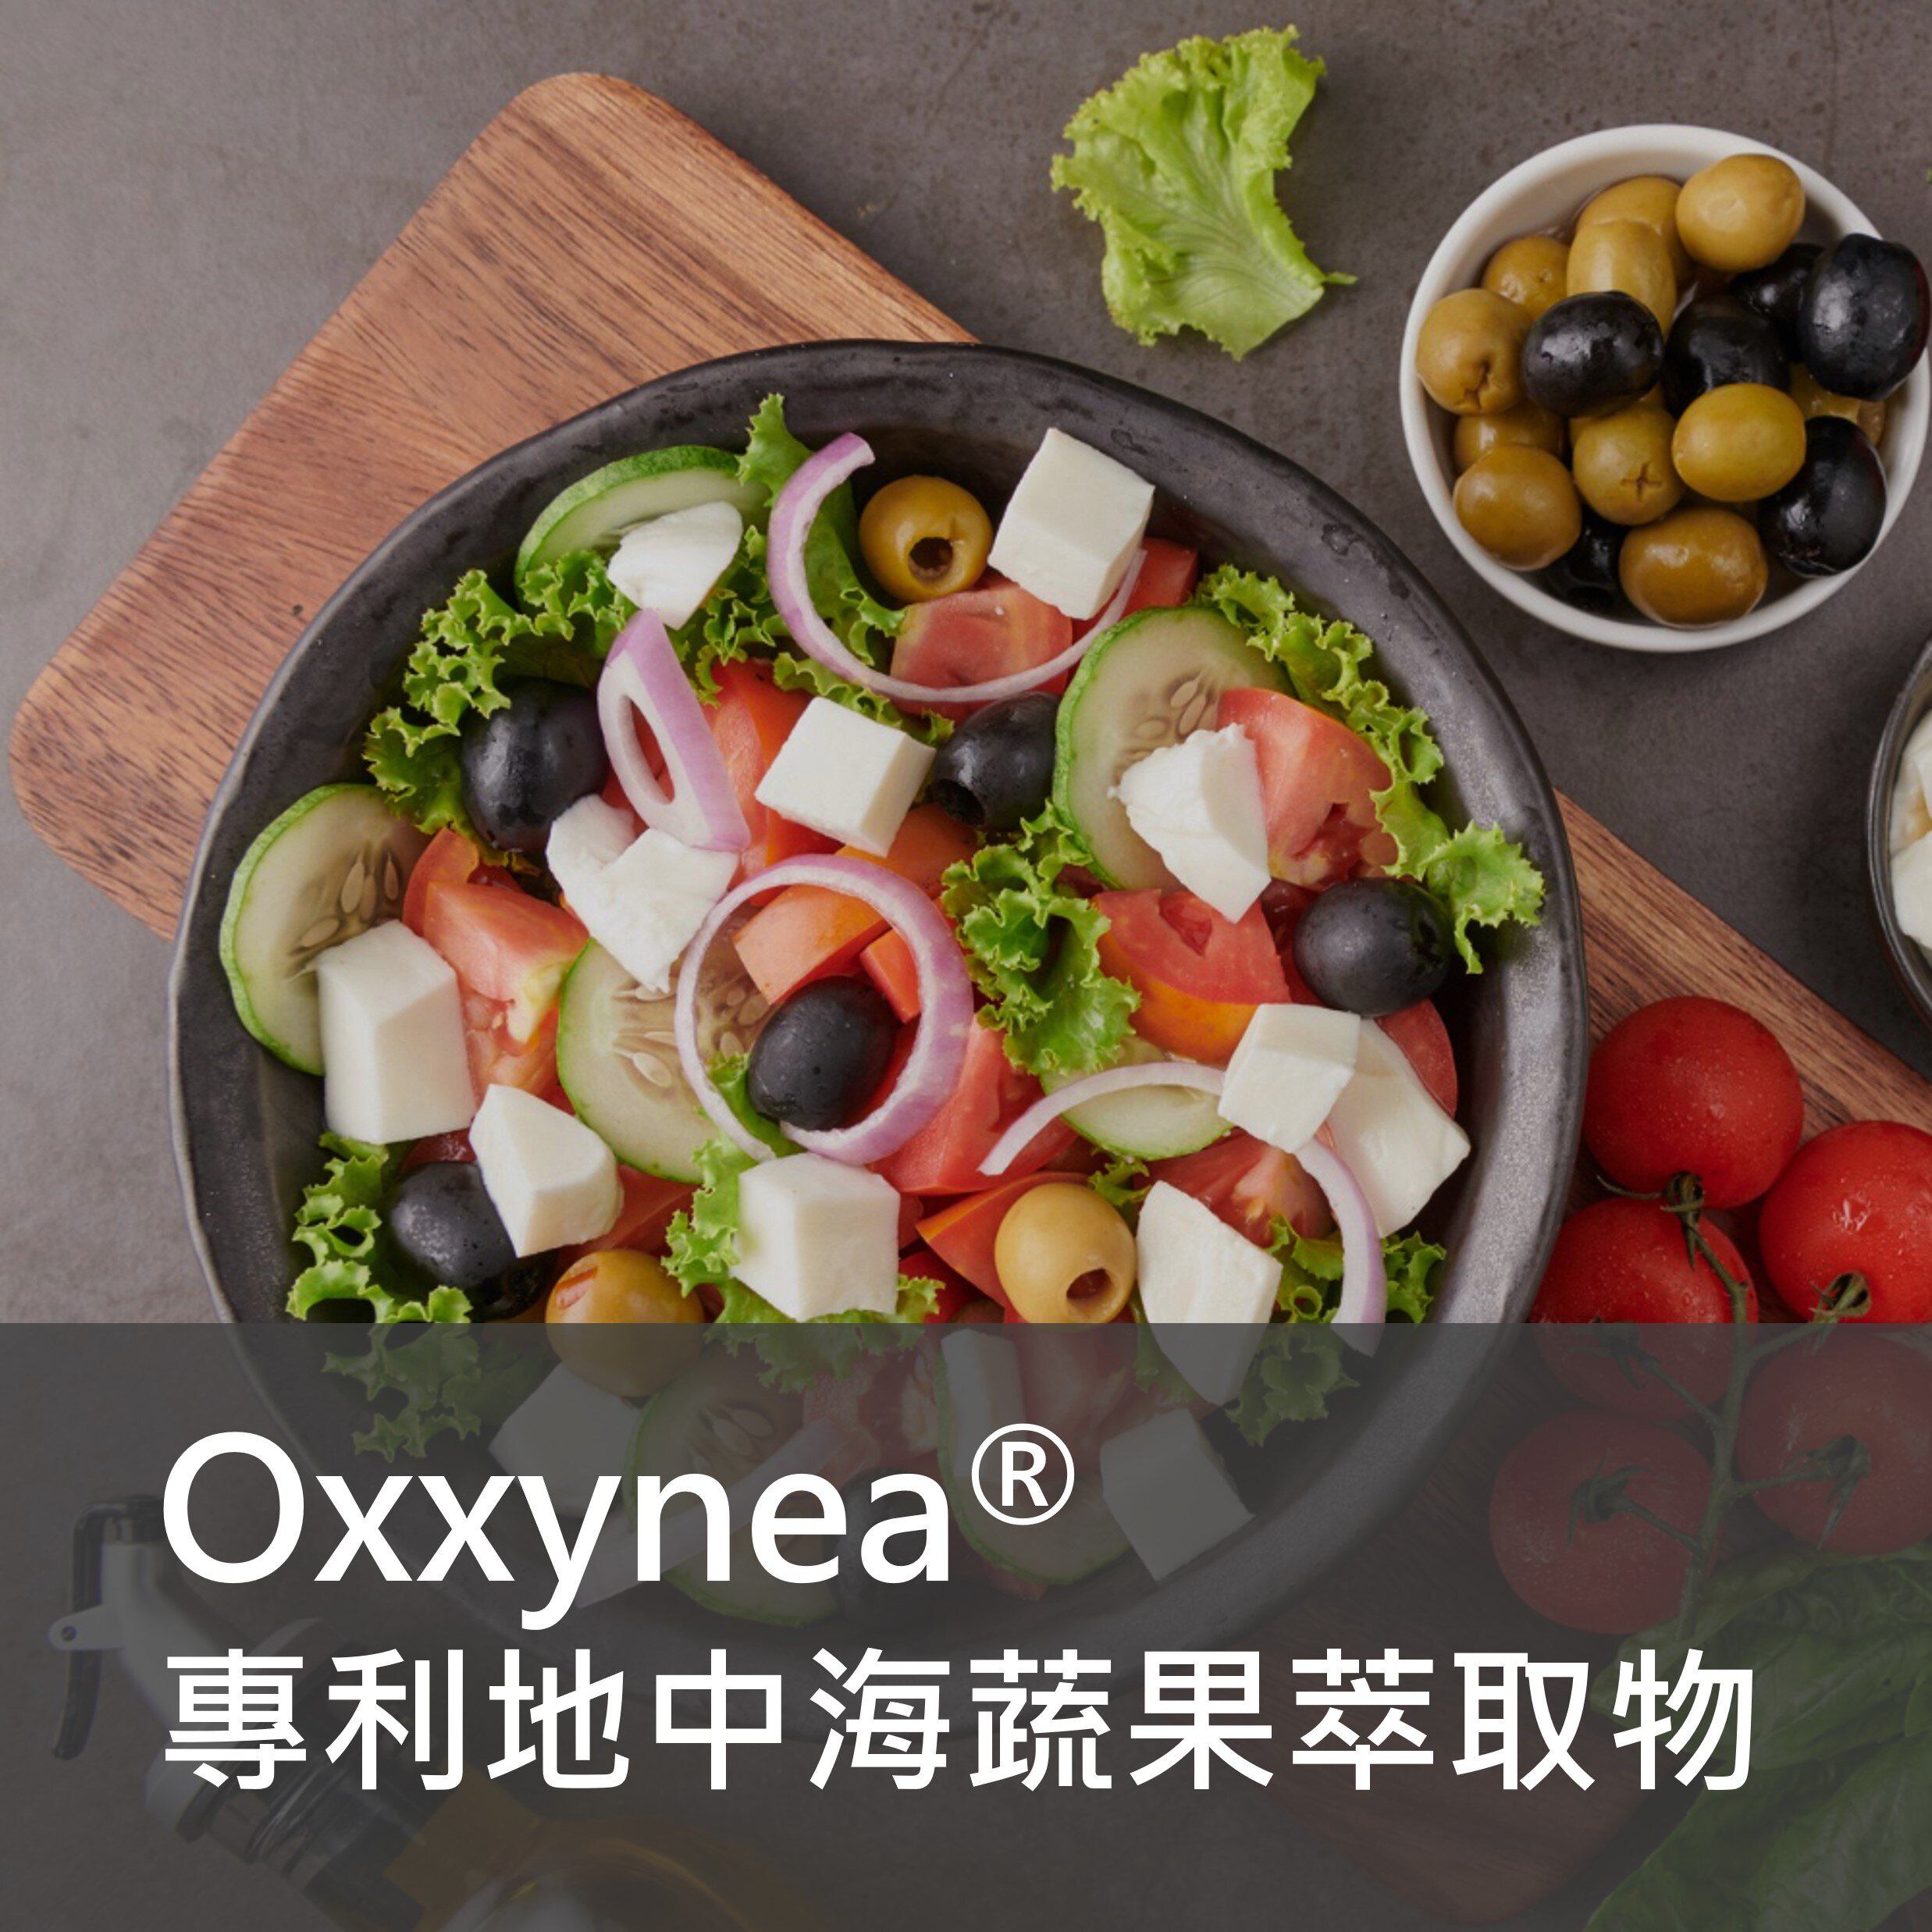 保健食品原料 - Oxxynea專利地中海蔬果萃取物